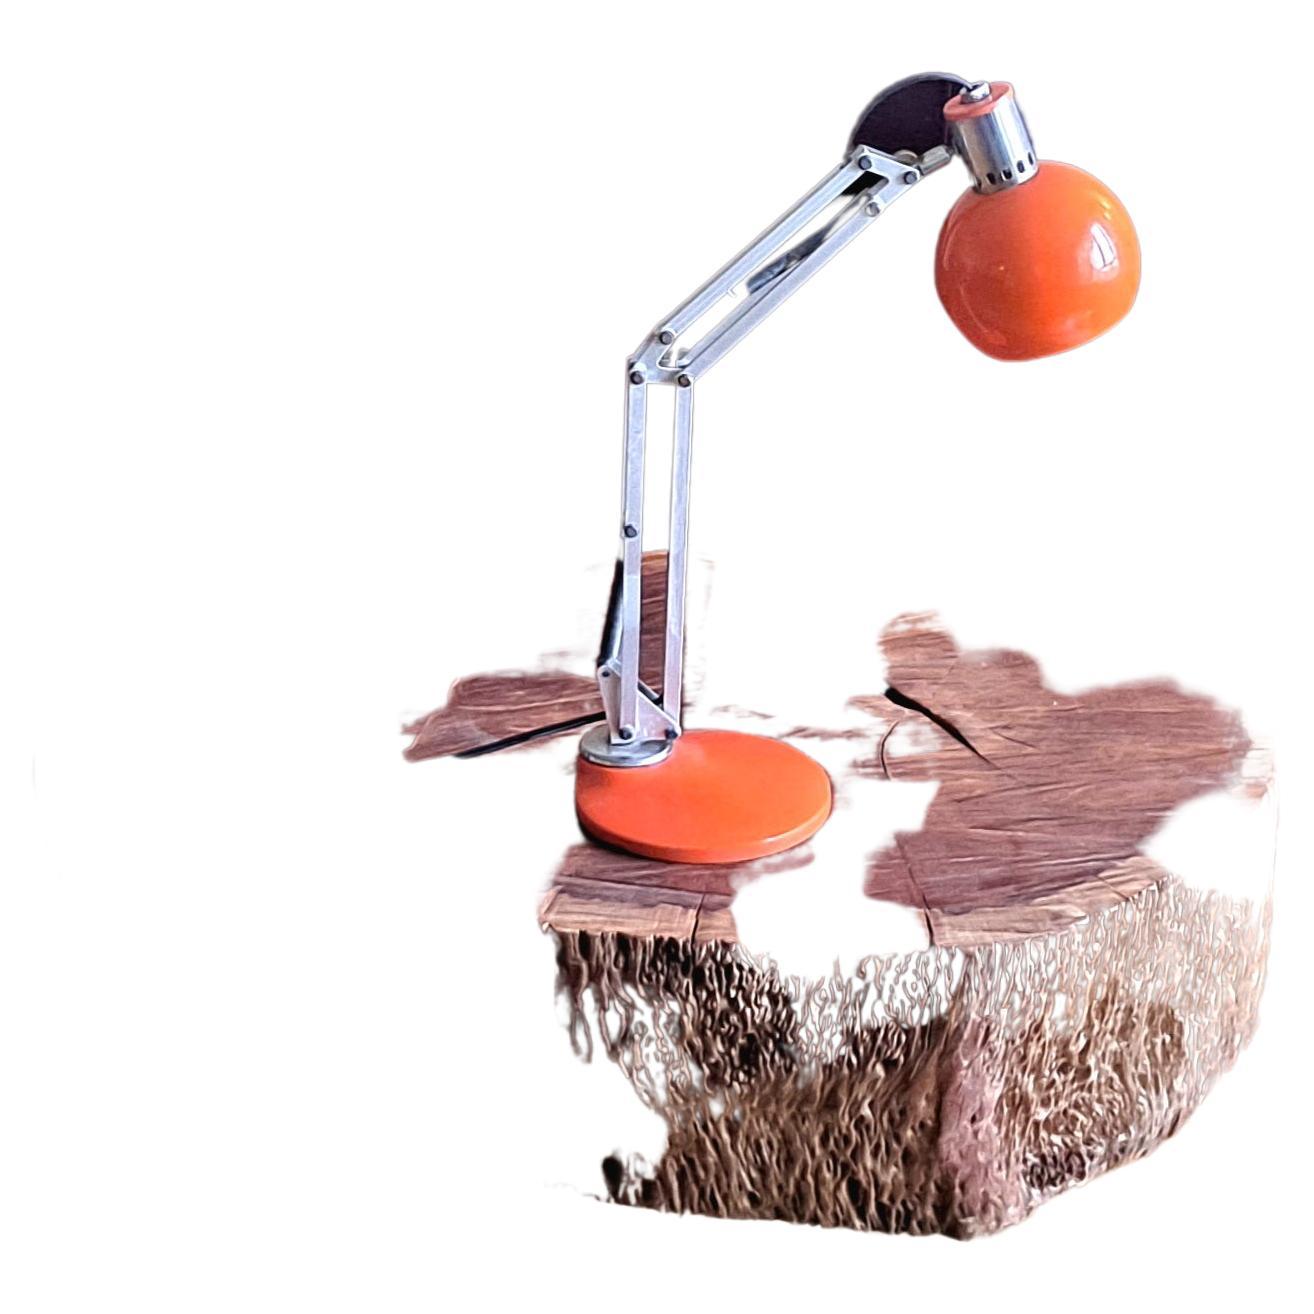 Orange italienische Schreibtischlampe, verstellbare Höhe und Hals, Basis ist 360 Grad drehbar, alles in Ordnung  Originalzustand . 